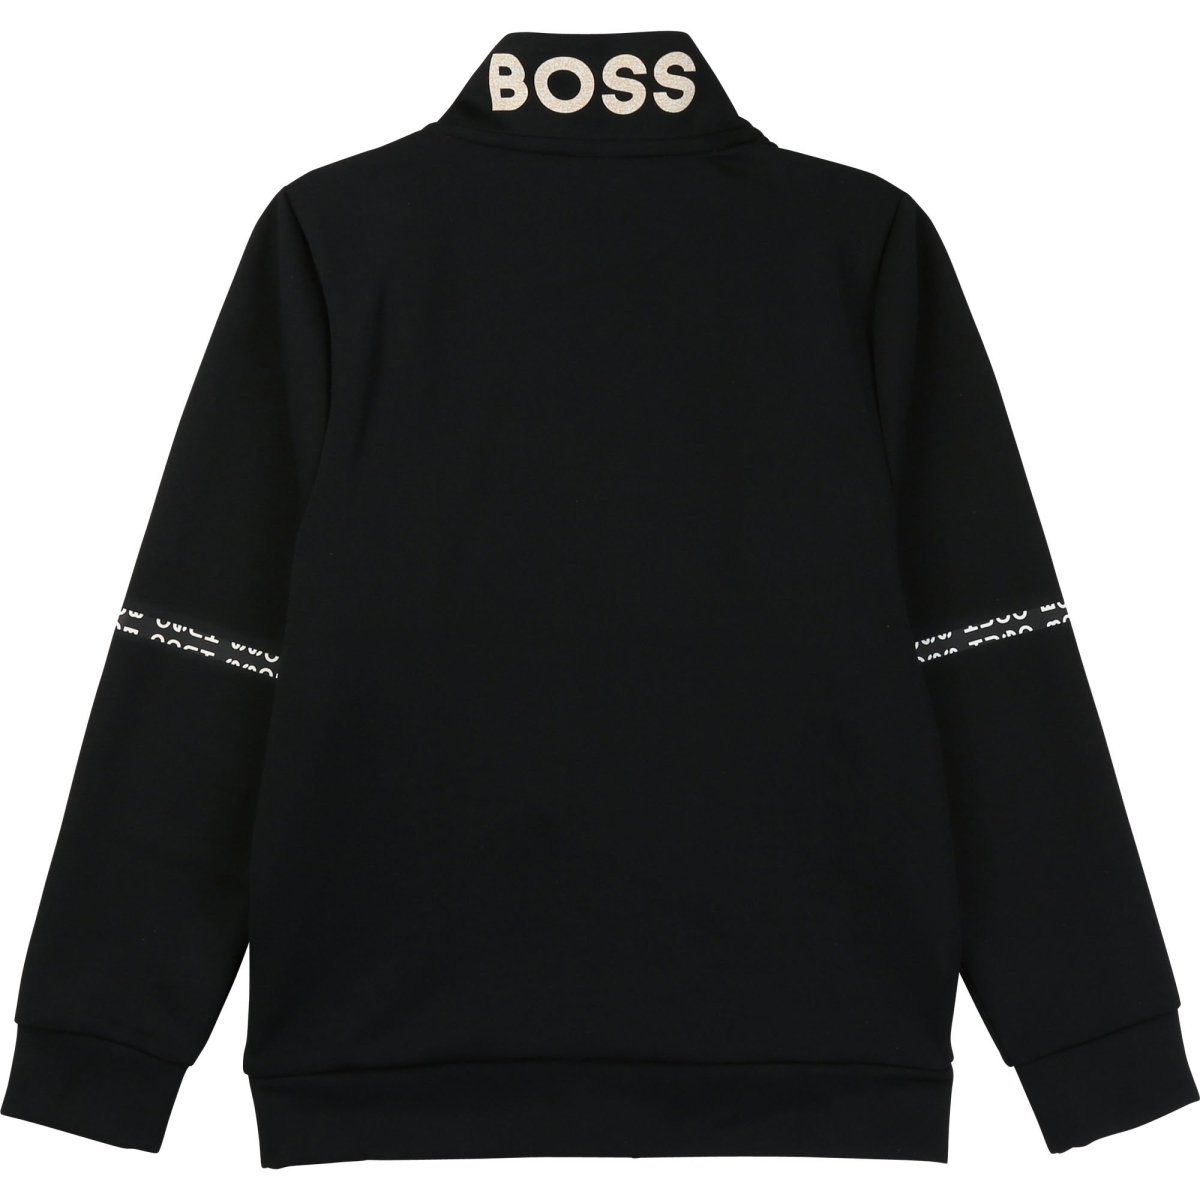 Hugo Boss Boys Black Sweatshirt Sweatshirts and Sweatpants Hugo Boss 